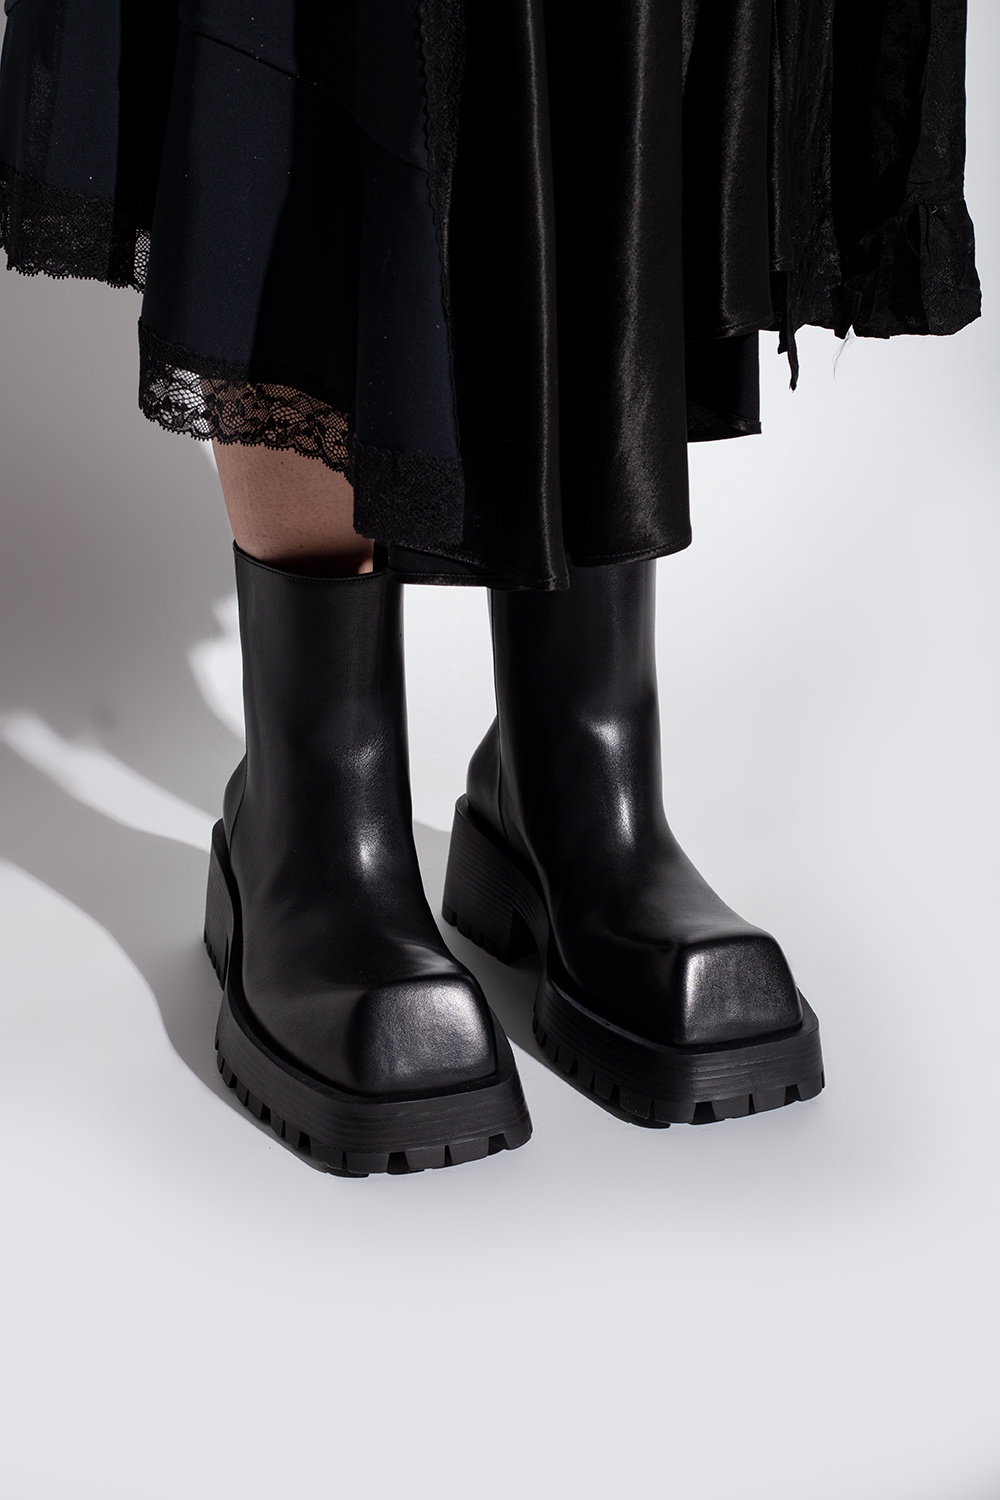 IetpShops GB - Black 'Trooper' ankle boots Balenciaga - Cloudfeel